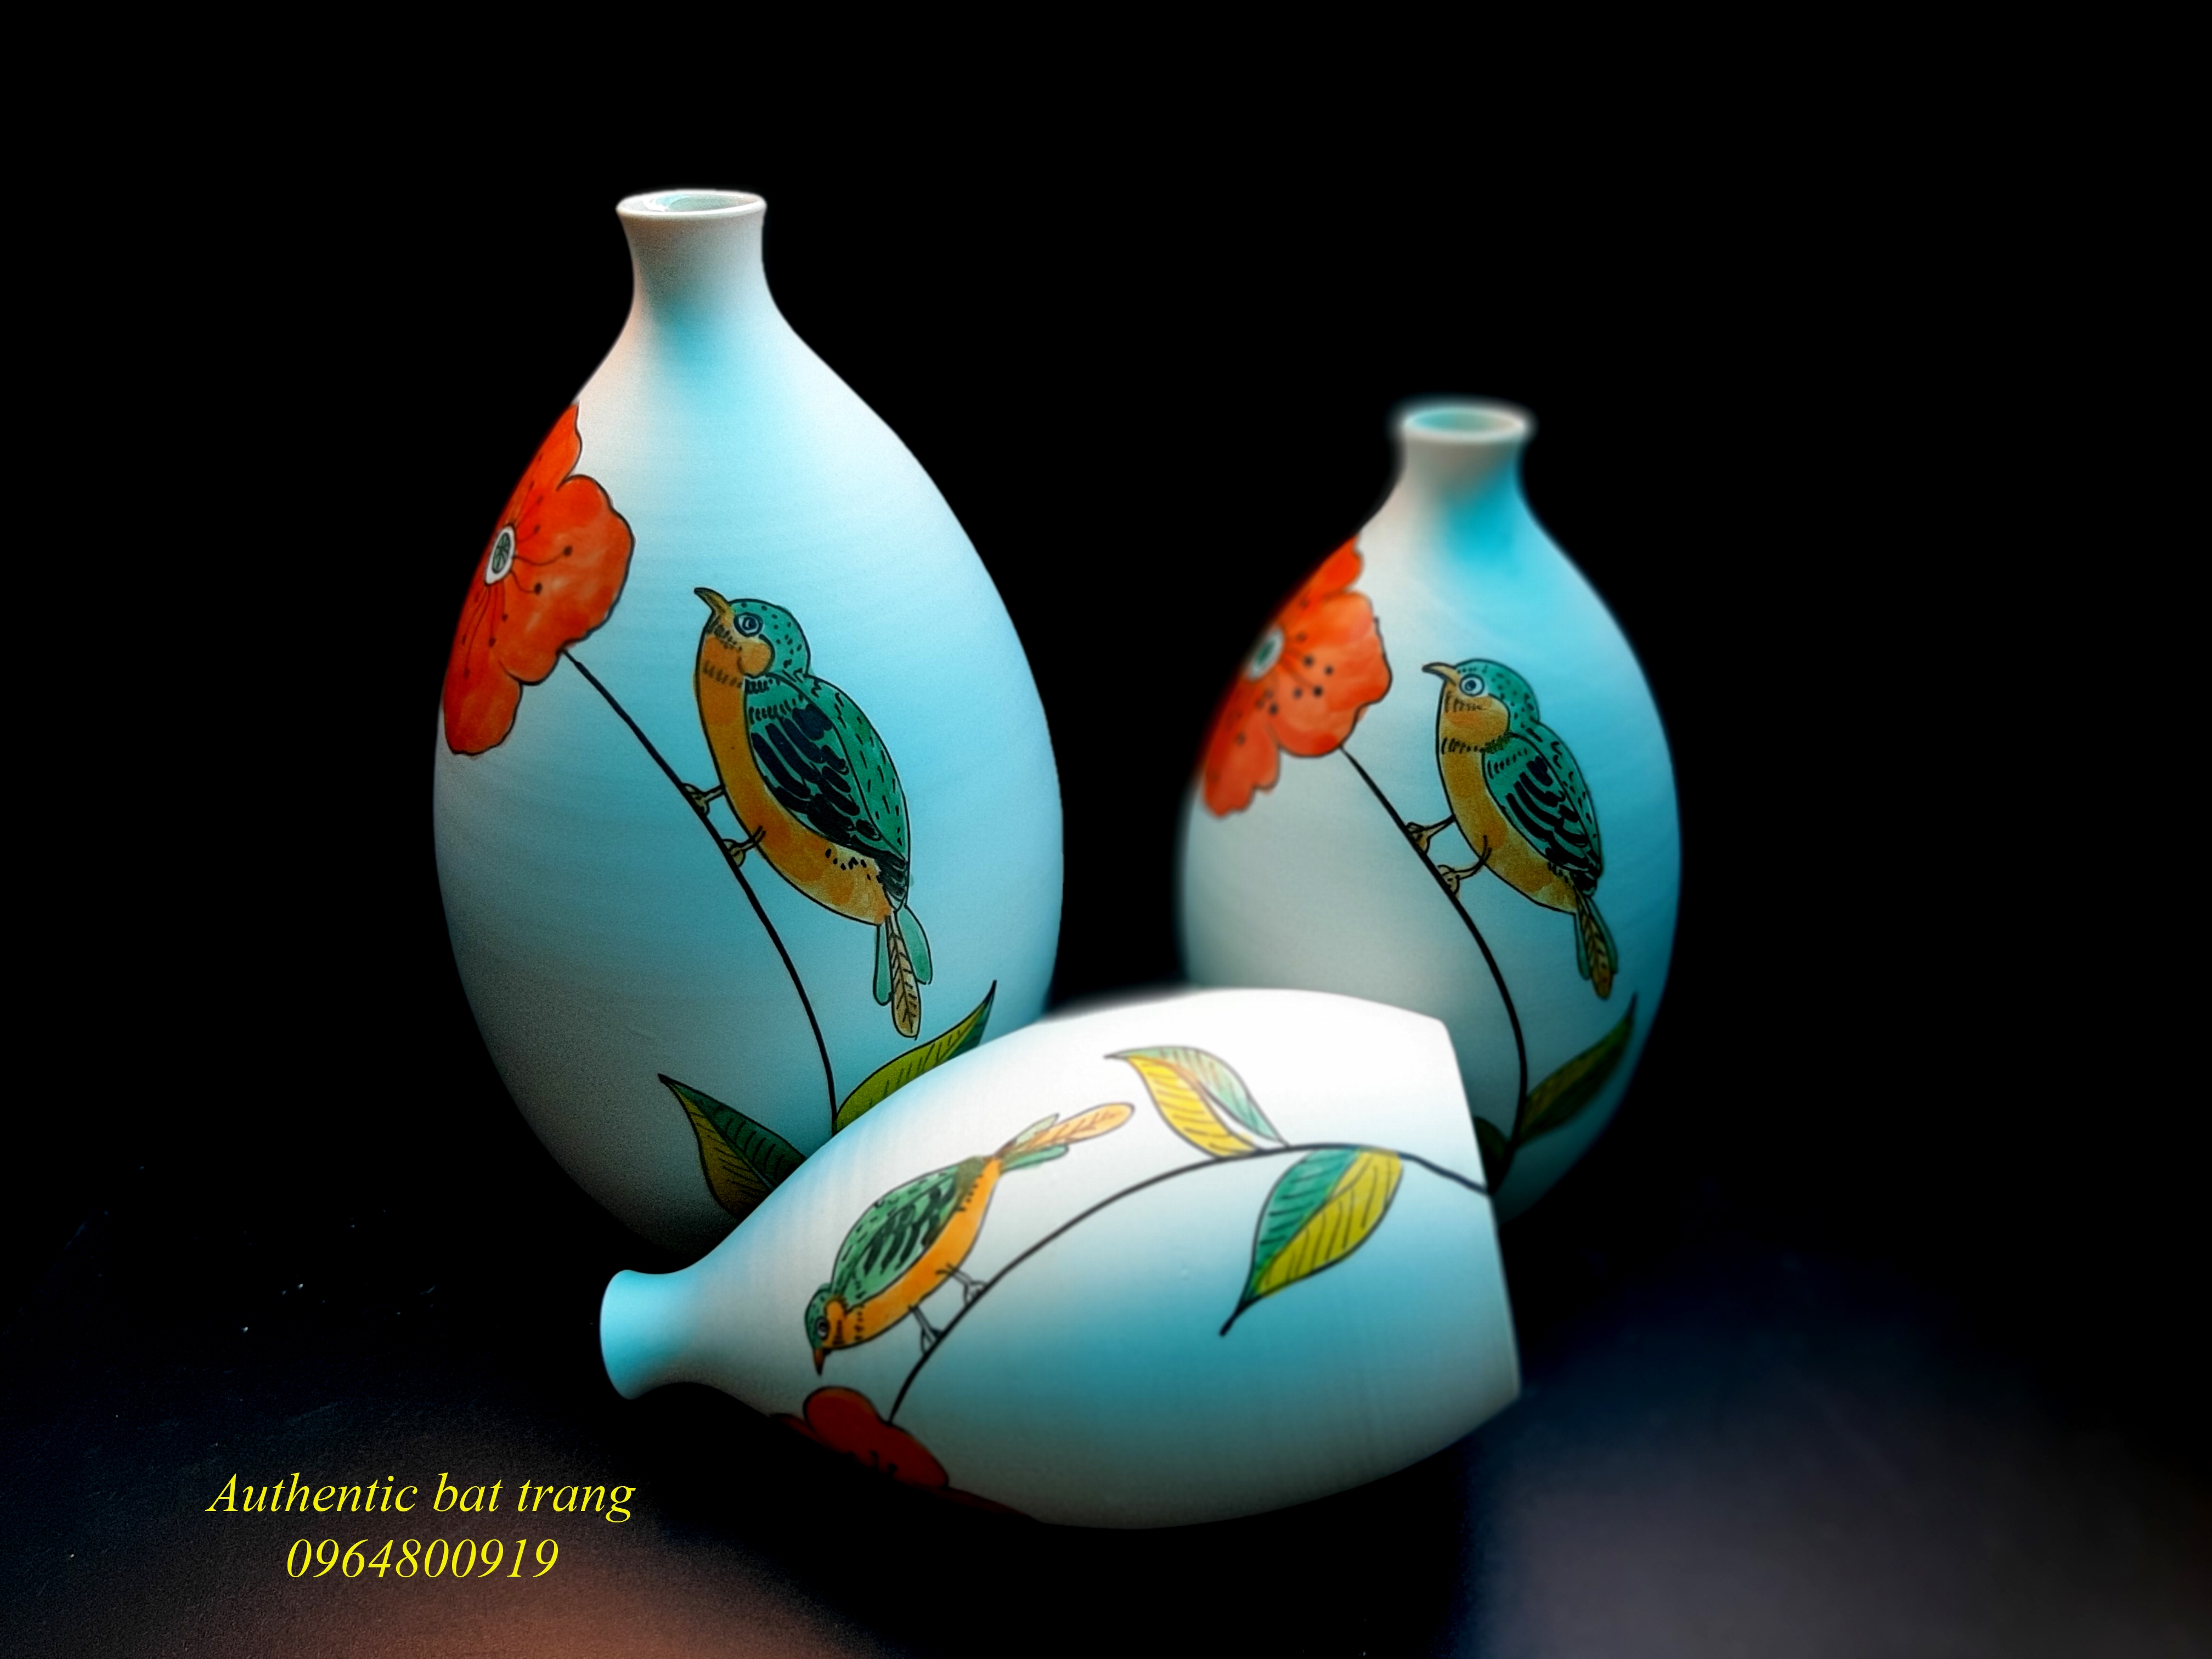 Ceramics vase set/Bộ bình gốm trang trí nhà cửa hàng thủ công vẽ tay sản xuất tại xưởng gốm Authentic bat trang